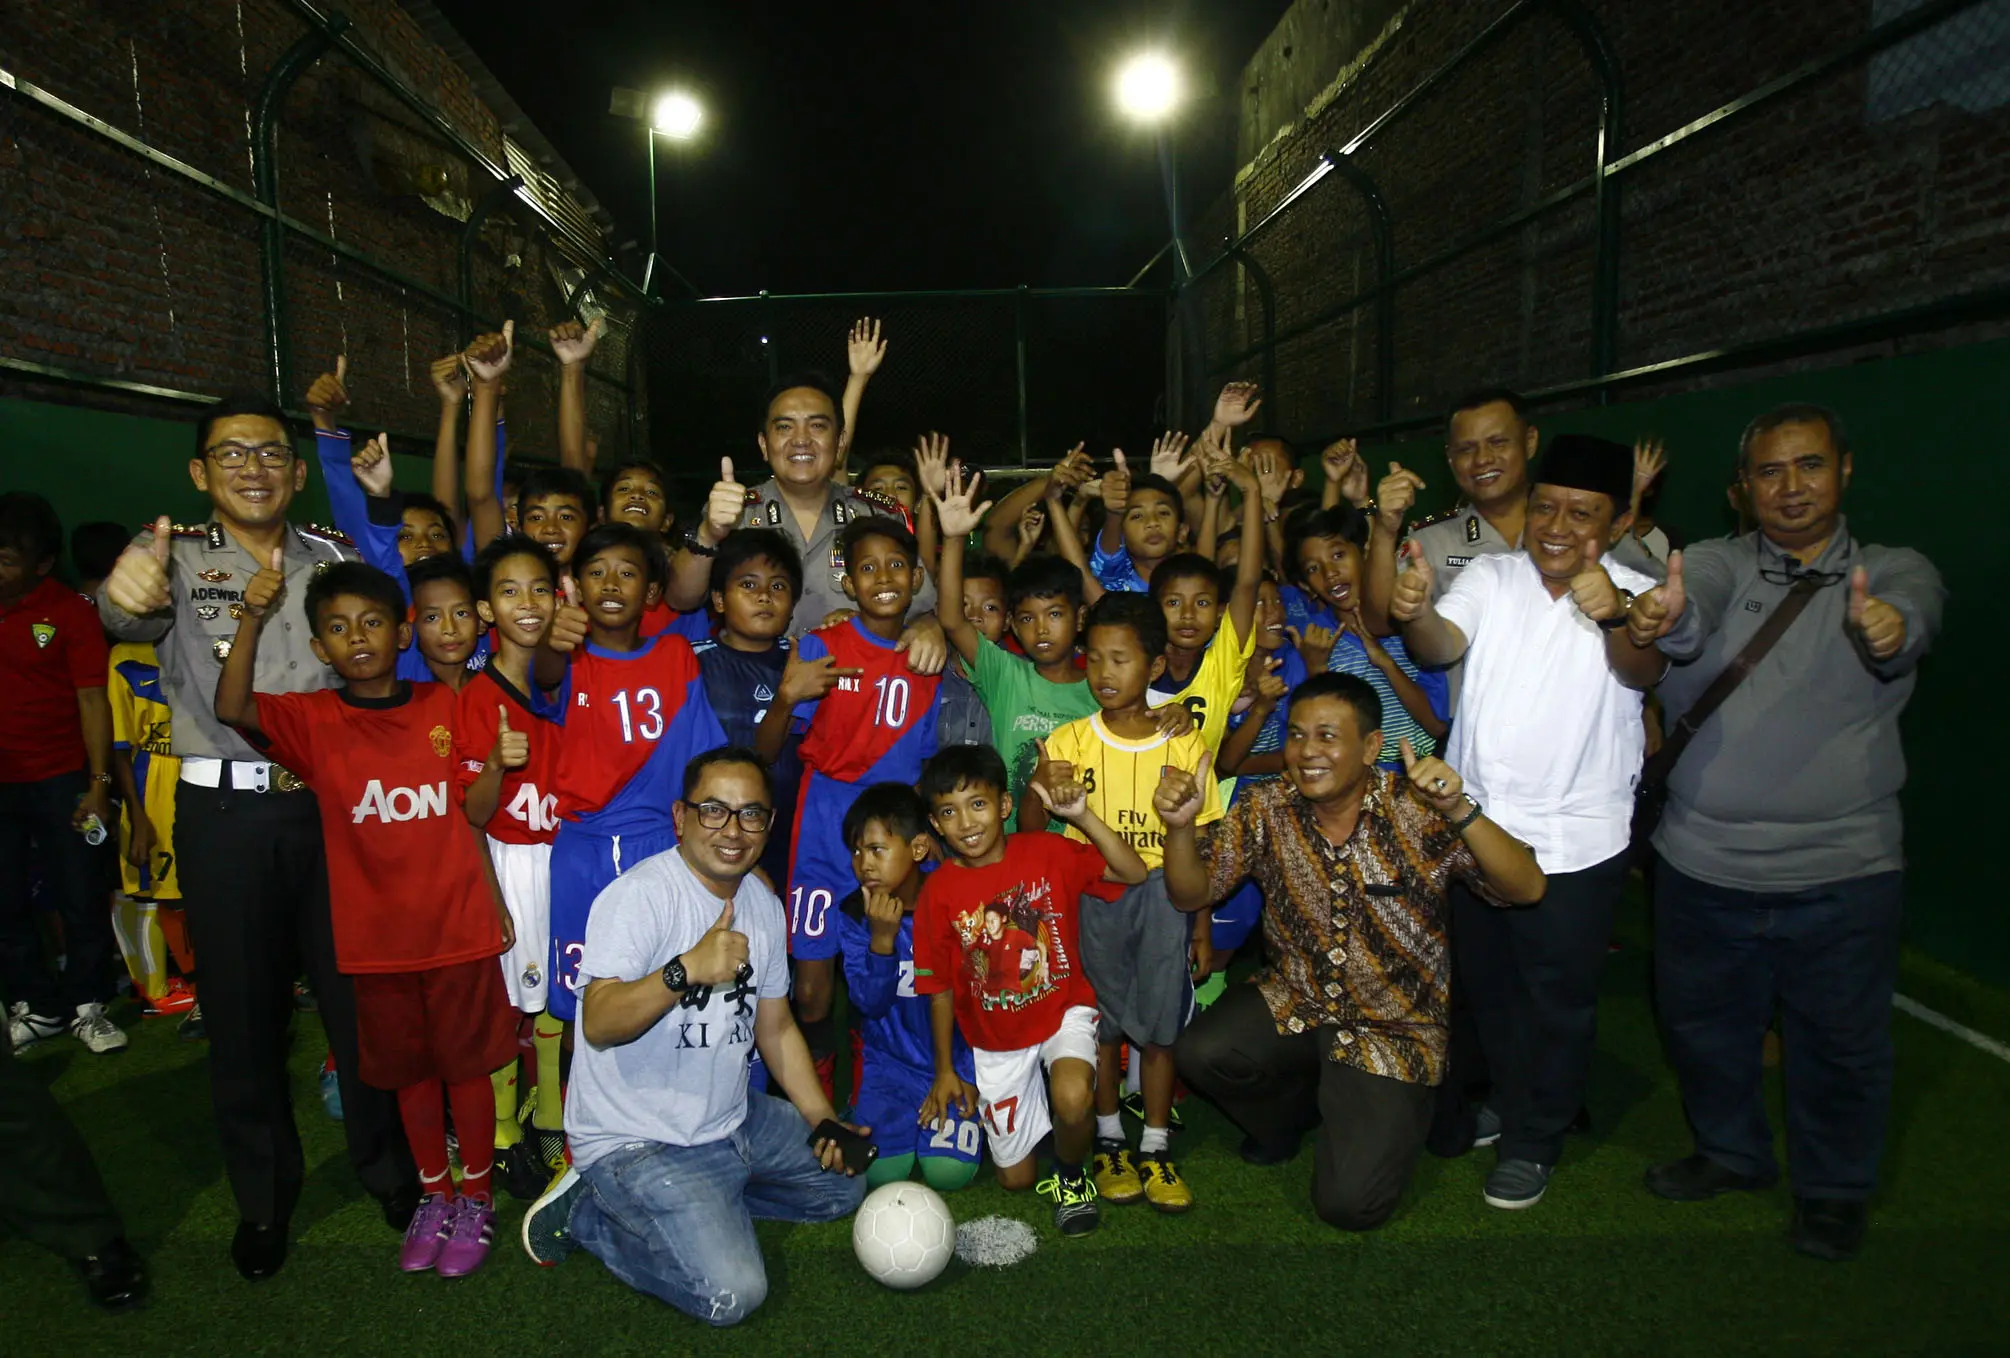 Kampung eks Gang Dolly ini sudah disulap jadi ajang turnamen futsal level anak-anak selama Ramadan. (/Dian Kurniawan).